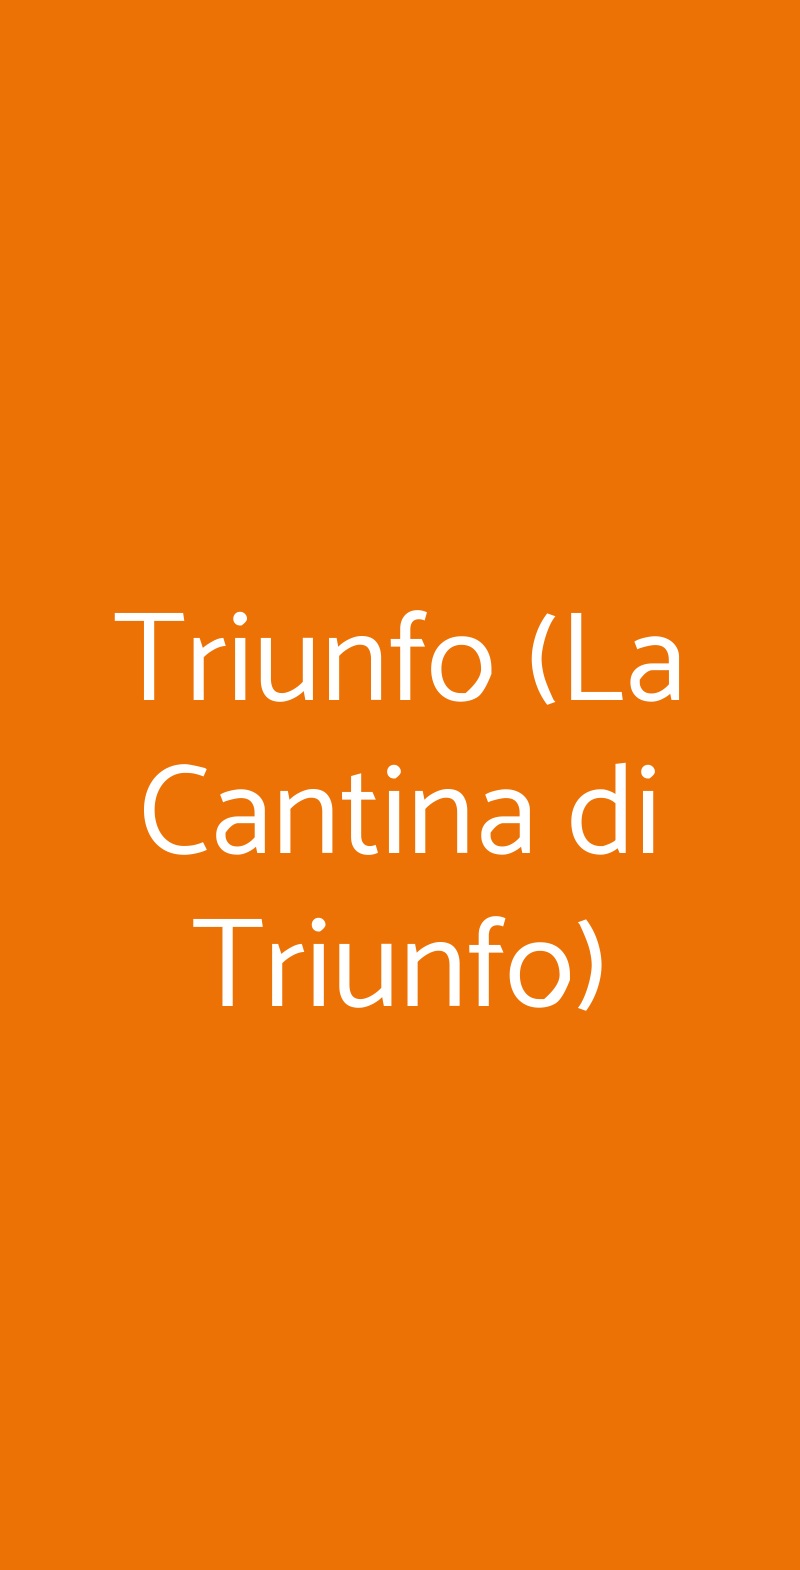 Triunfo (La Cantina di Triunfo) Napoli menù 1 pagina